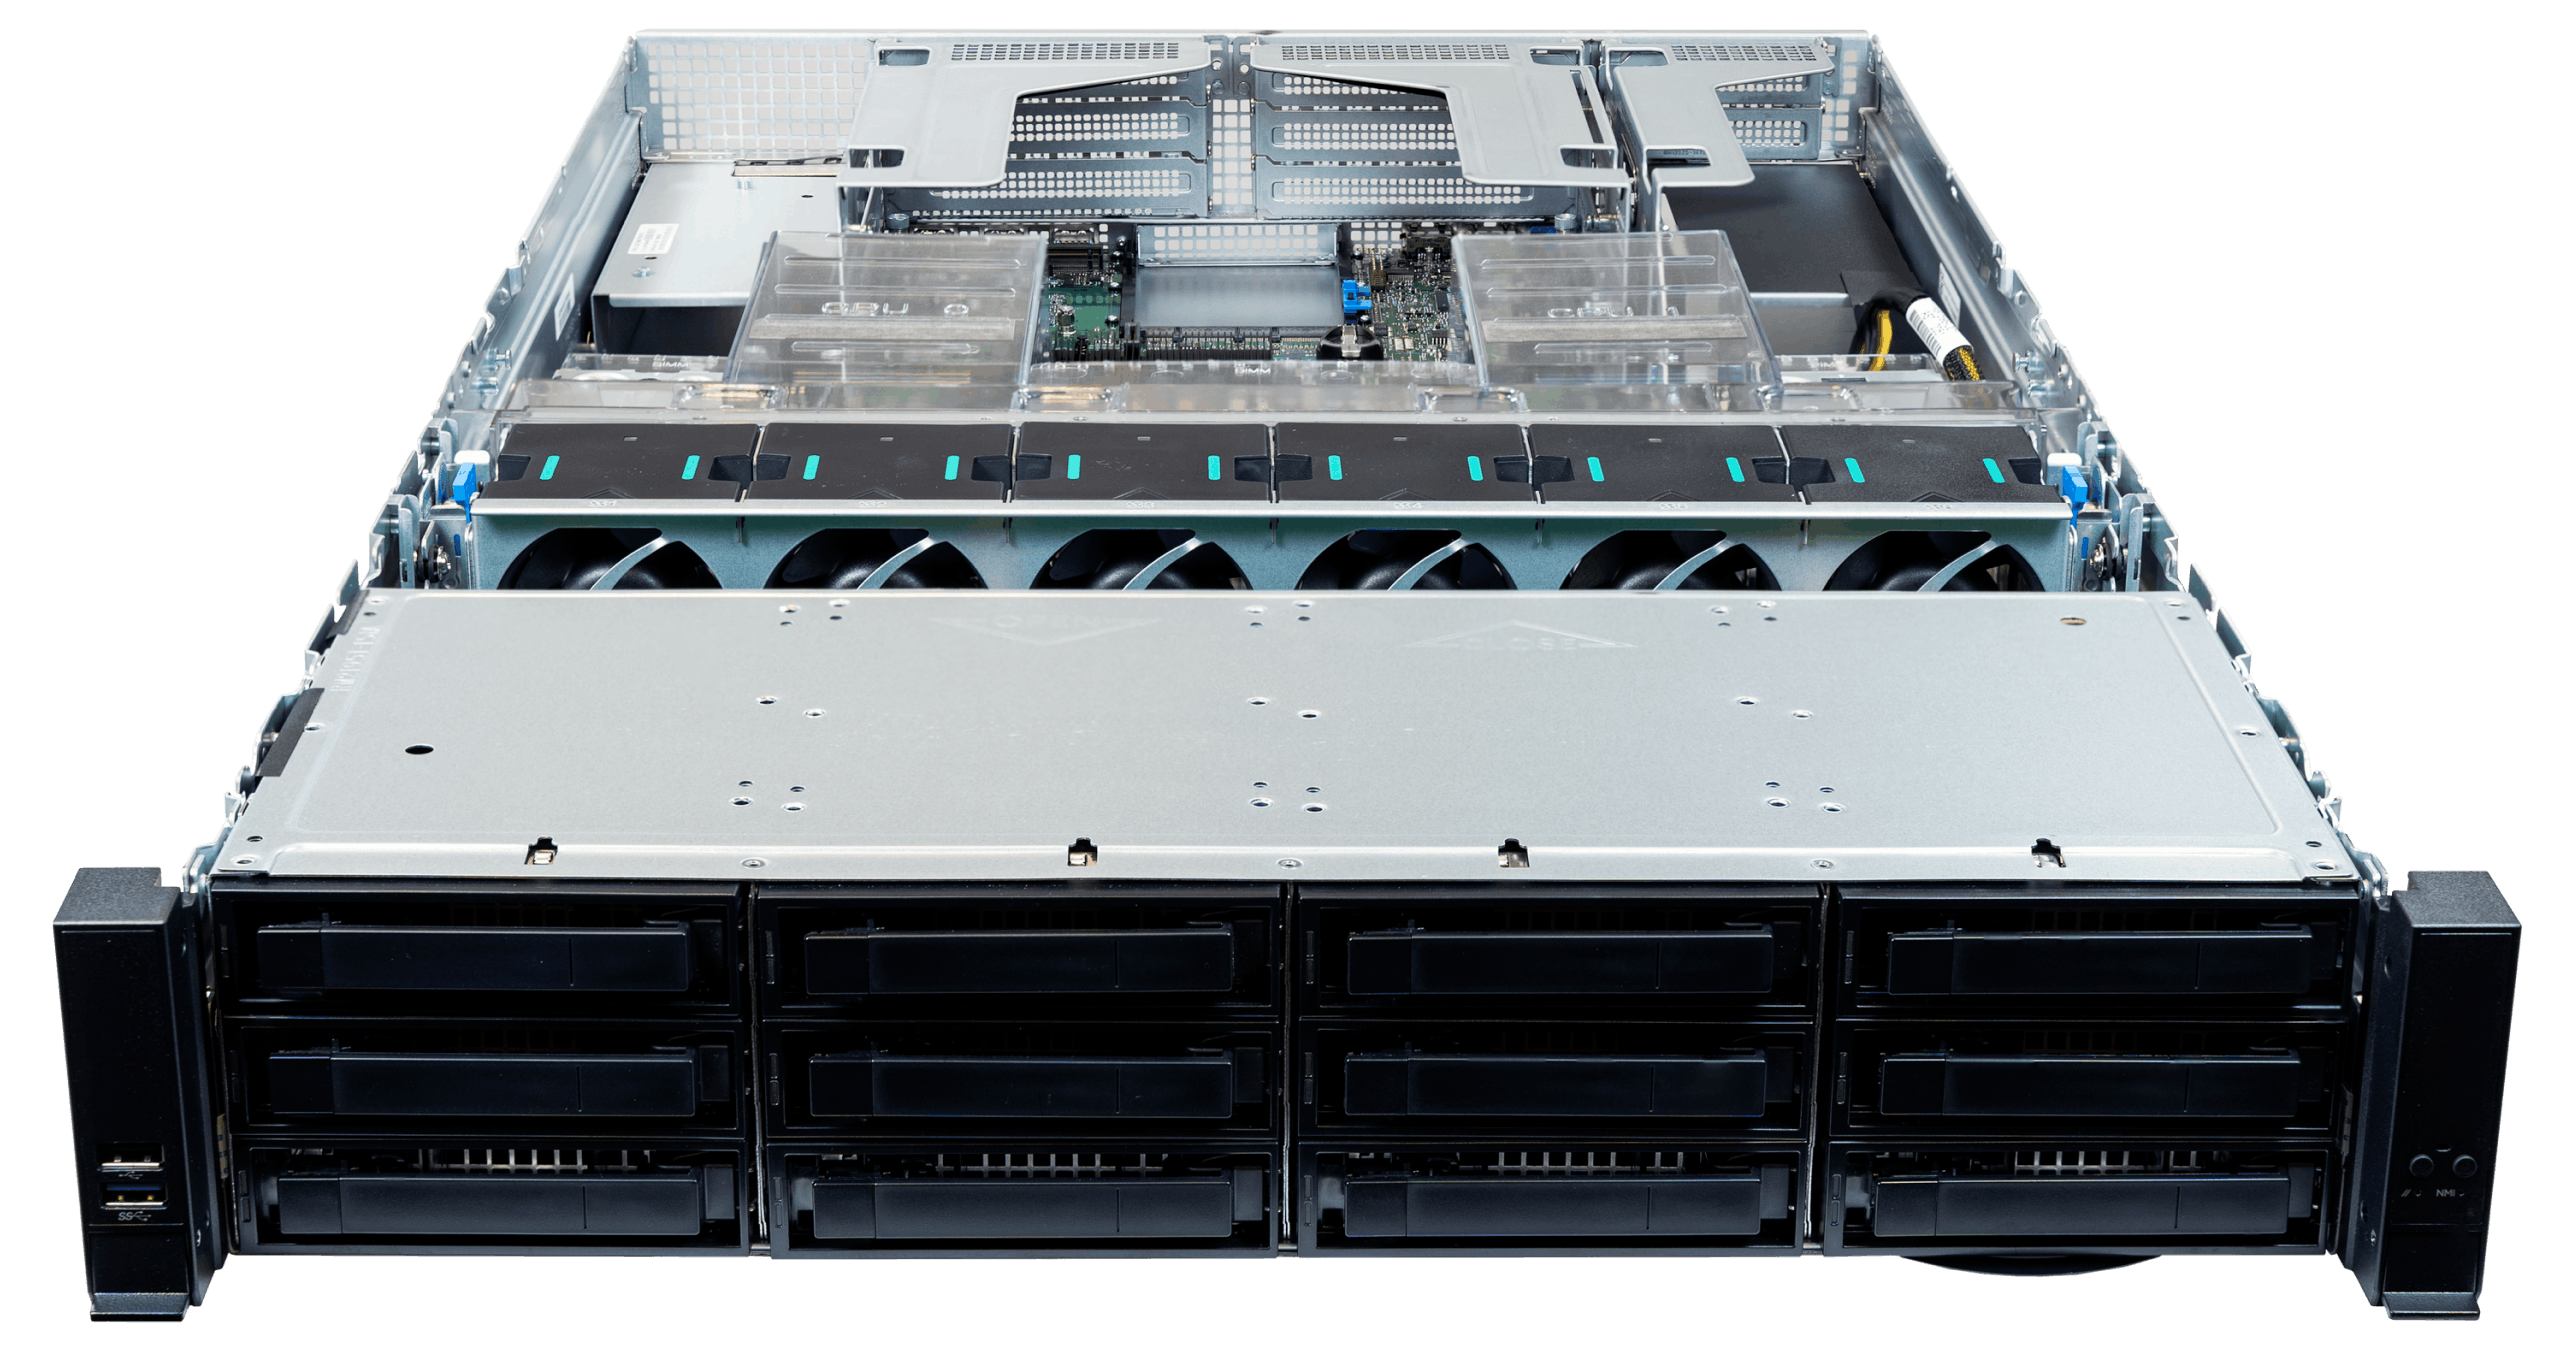 Front ports of the Jackal Pro 2U server